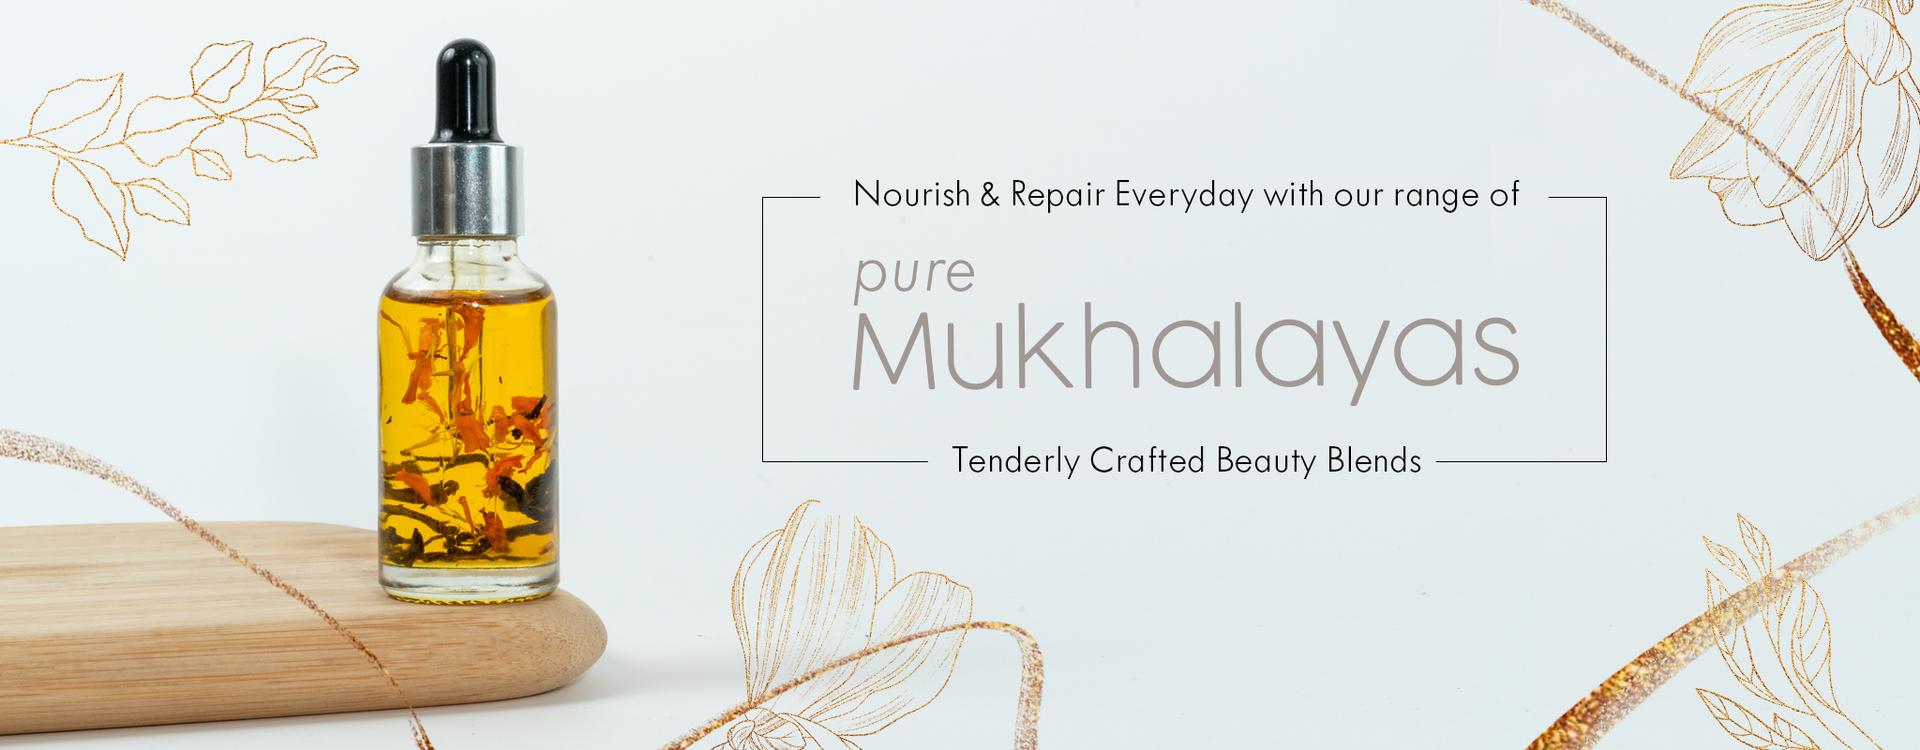 mukhalaya-banner-new-web-